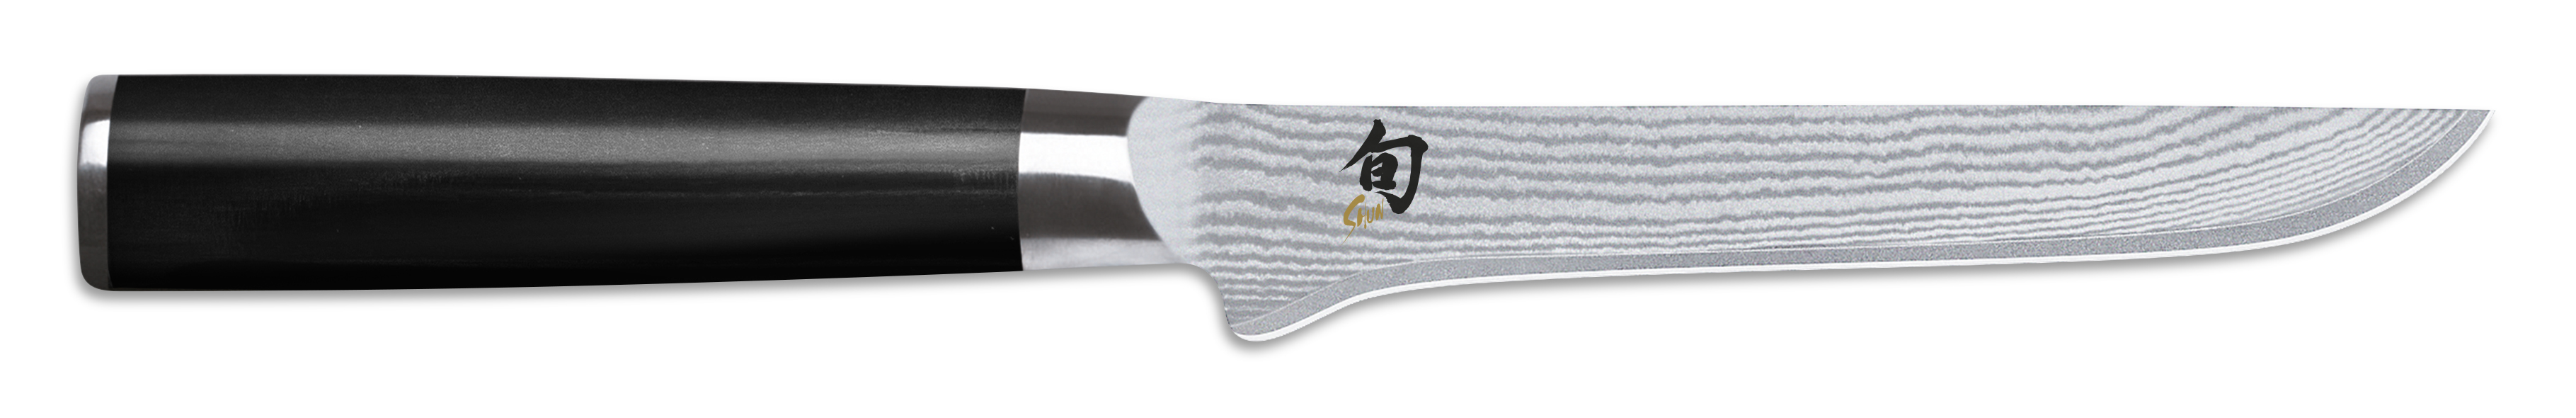 DM-0710: SHUN Kochmesser / Cook Knife Ausbeinmesser 6 (15,0 cm)